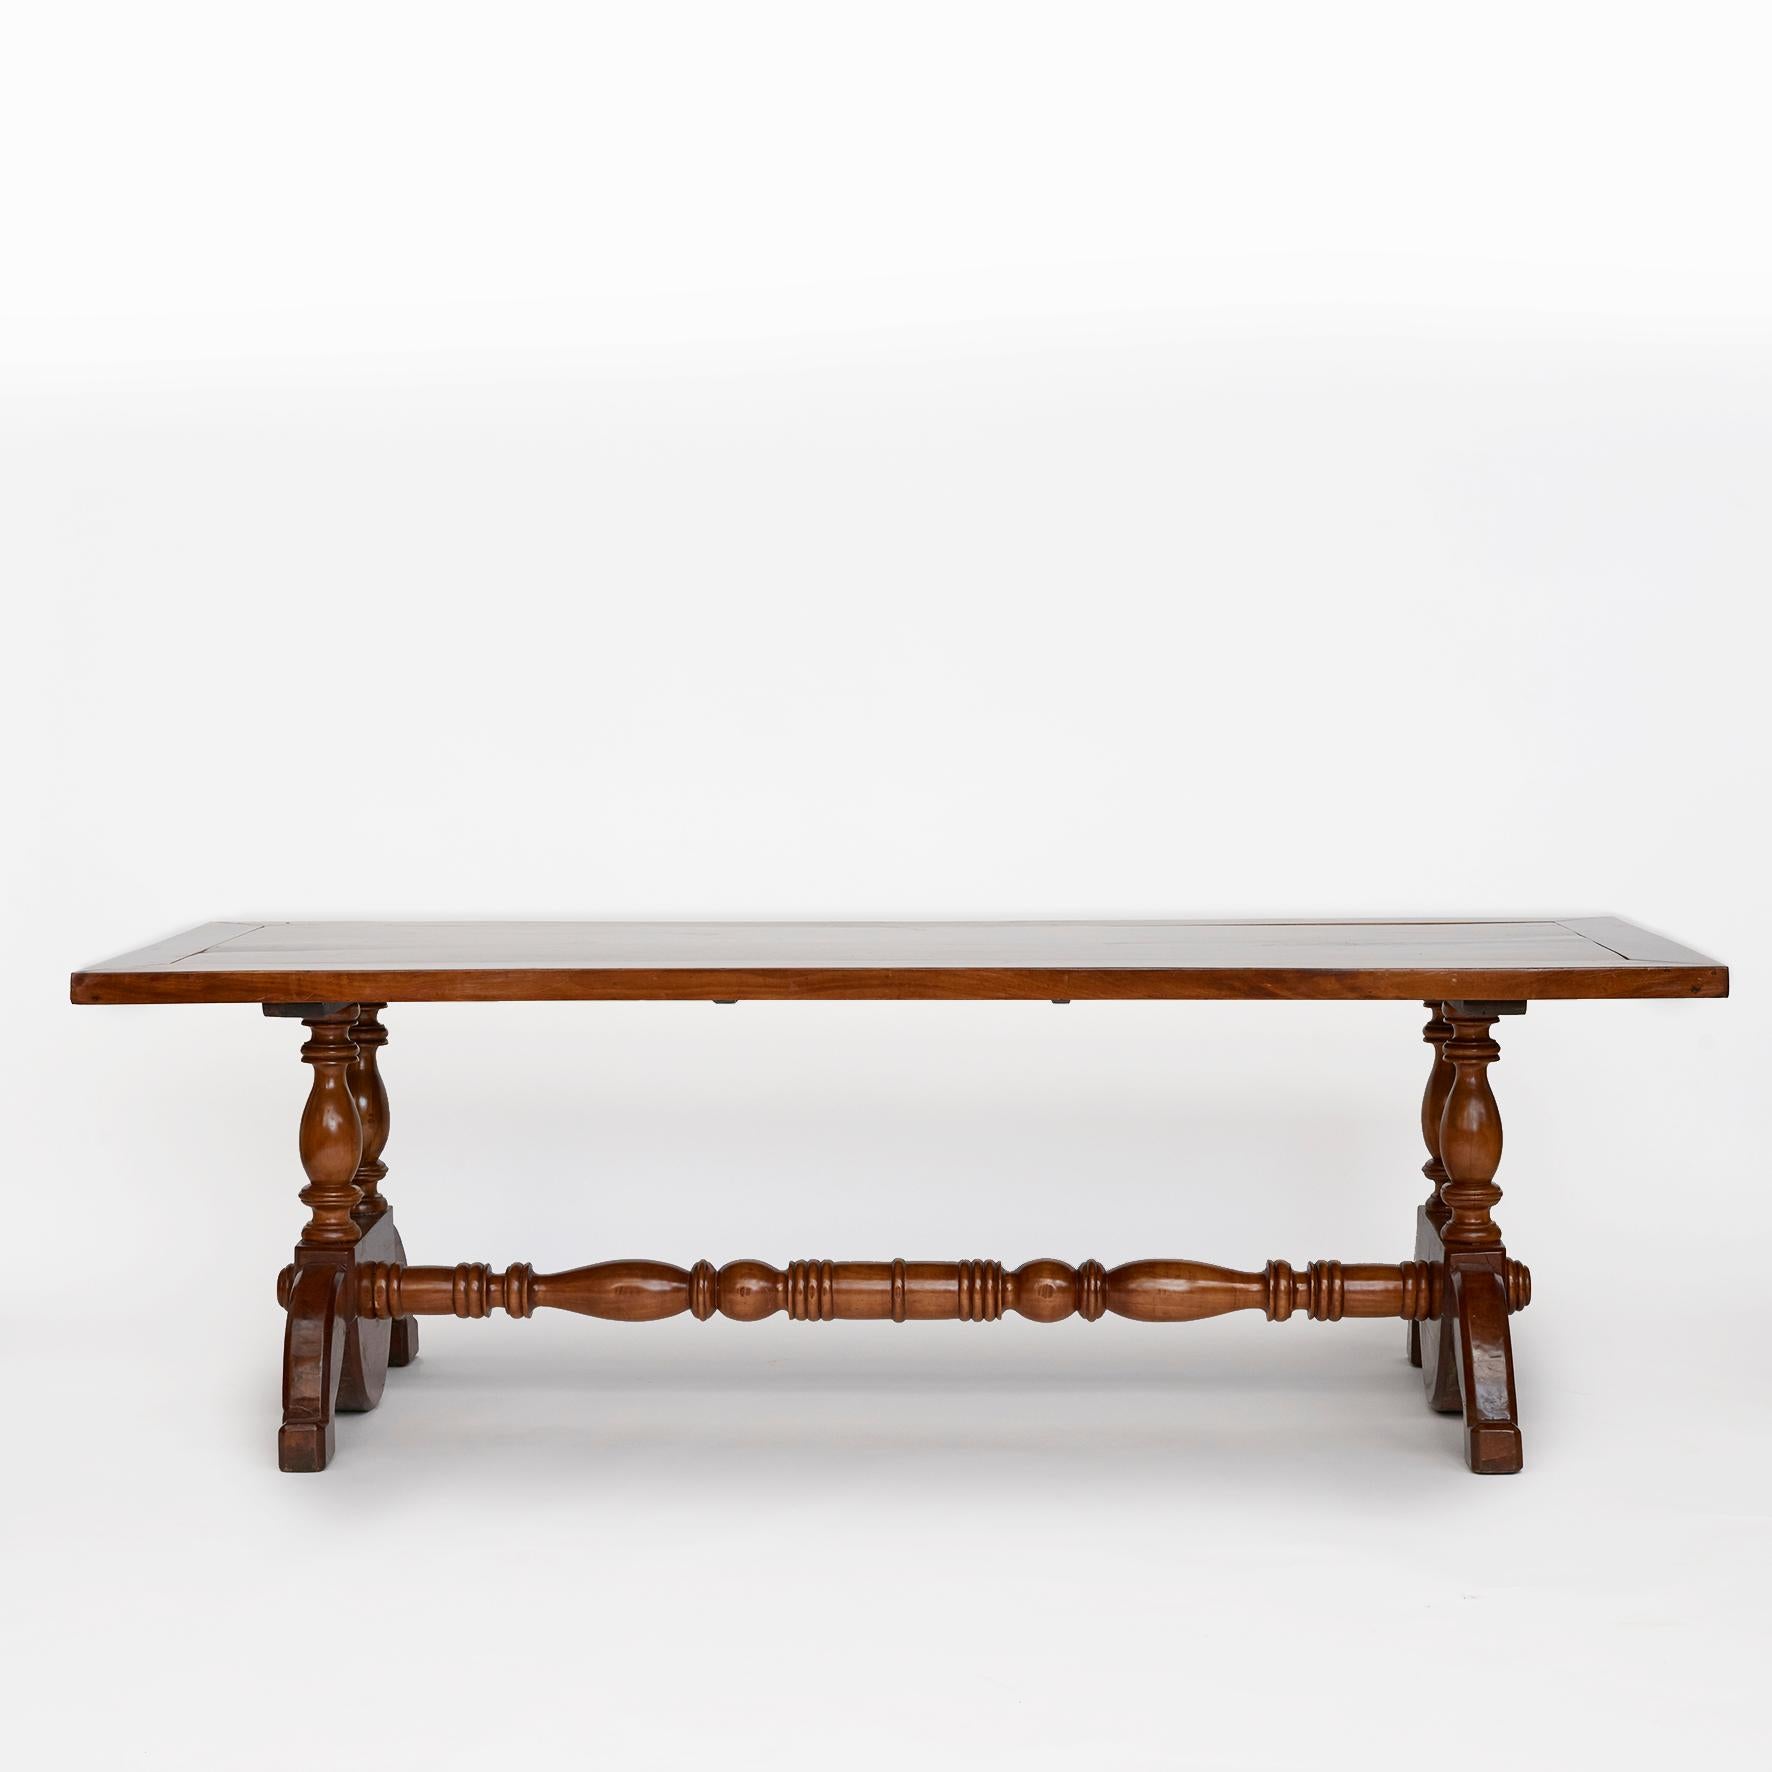 Longue table de salle à manger (242 cm x 94 cm) en bois dur de Molave.
Plateau rectangulaire en une seule pièce avec cadre de panneau 